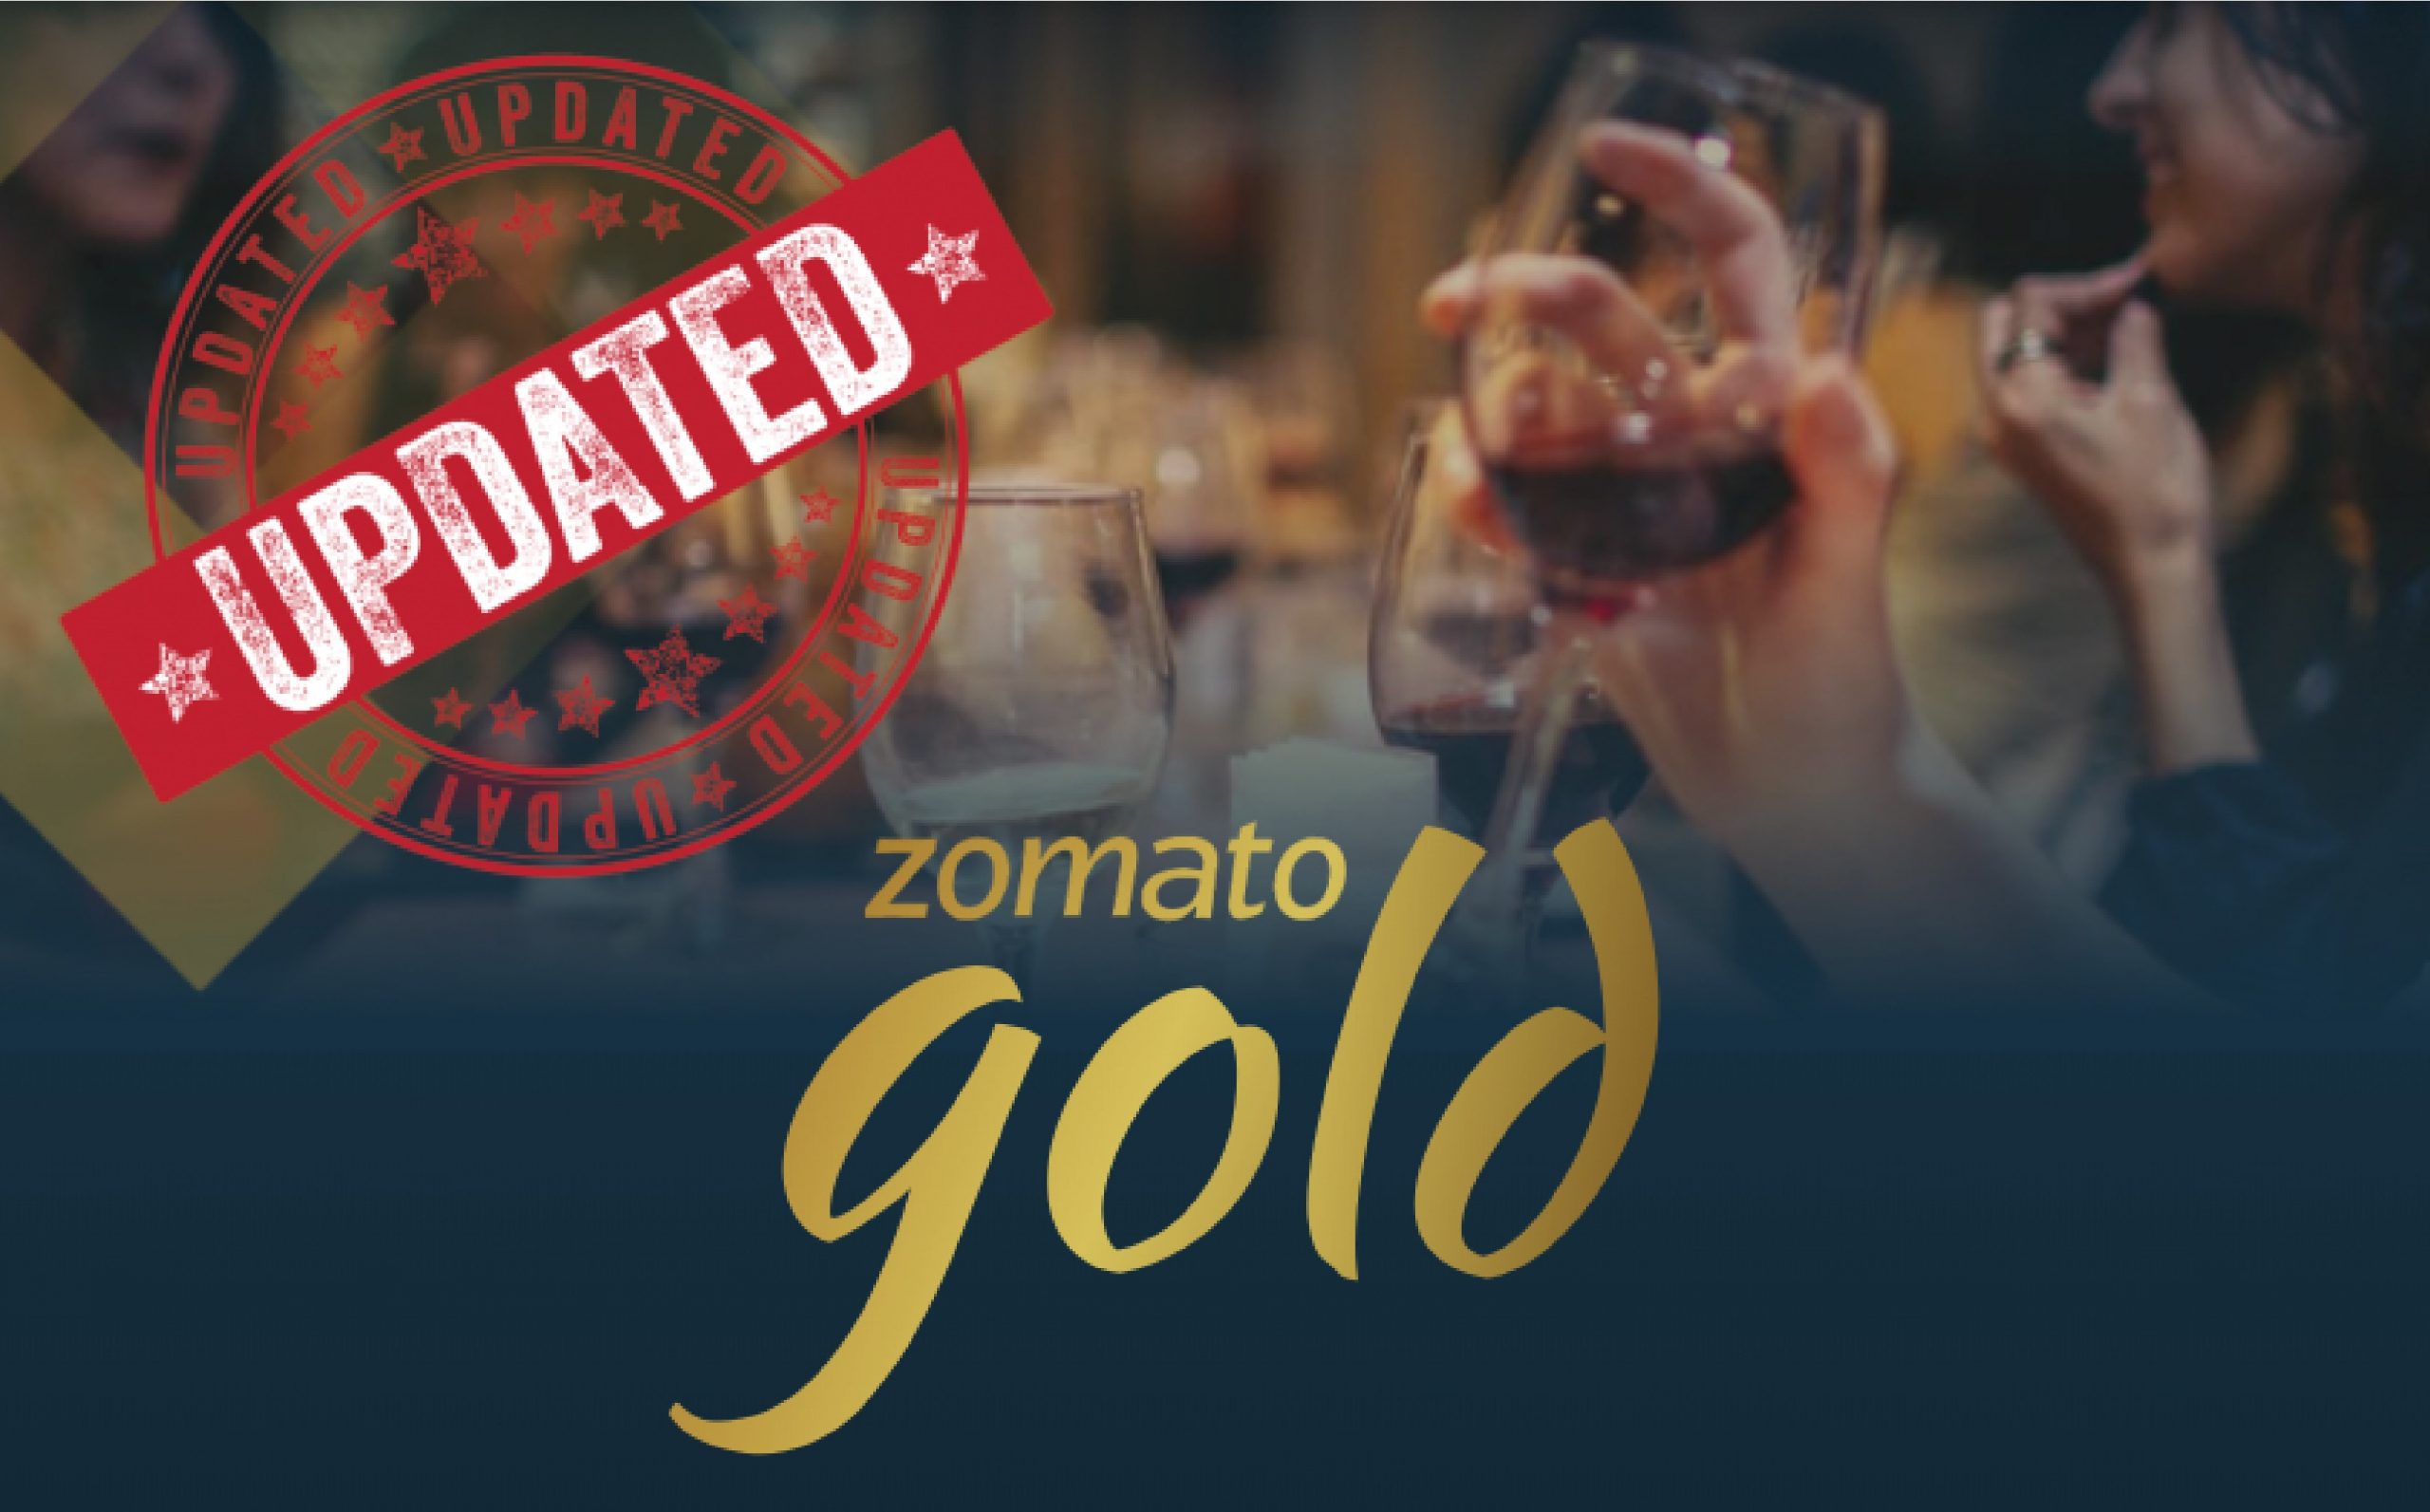 Zomato Gold Logout Campaign 